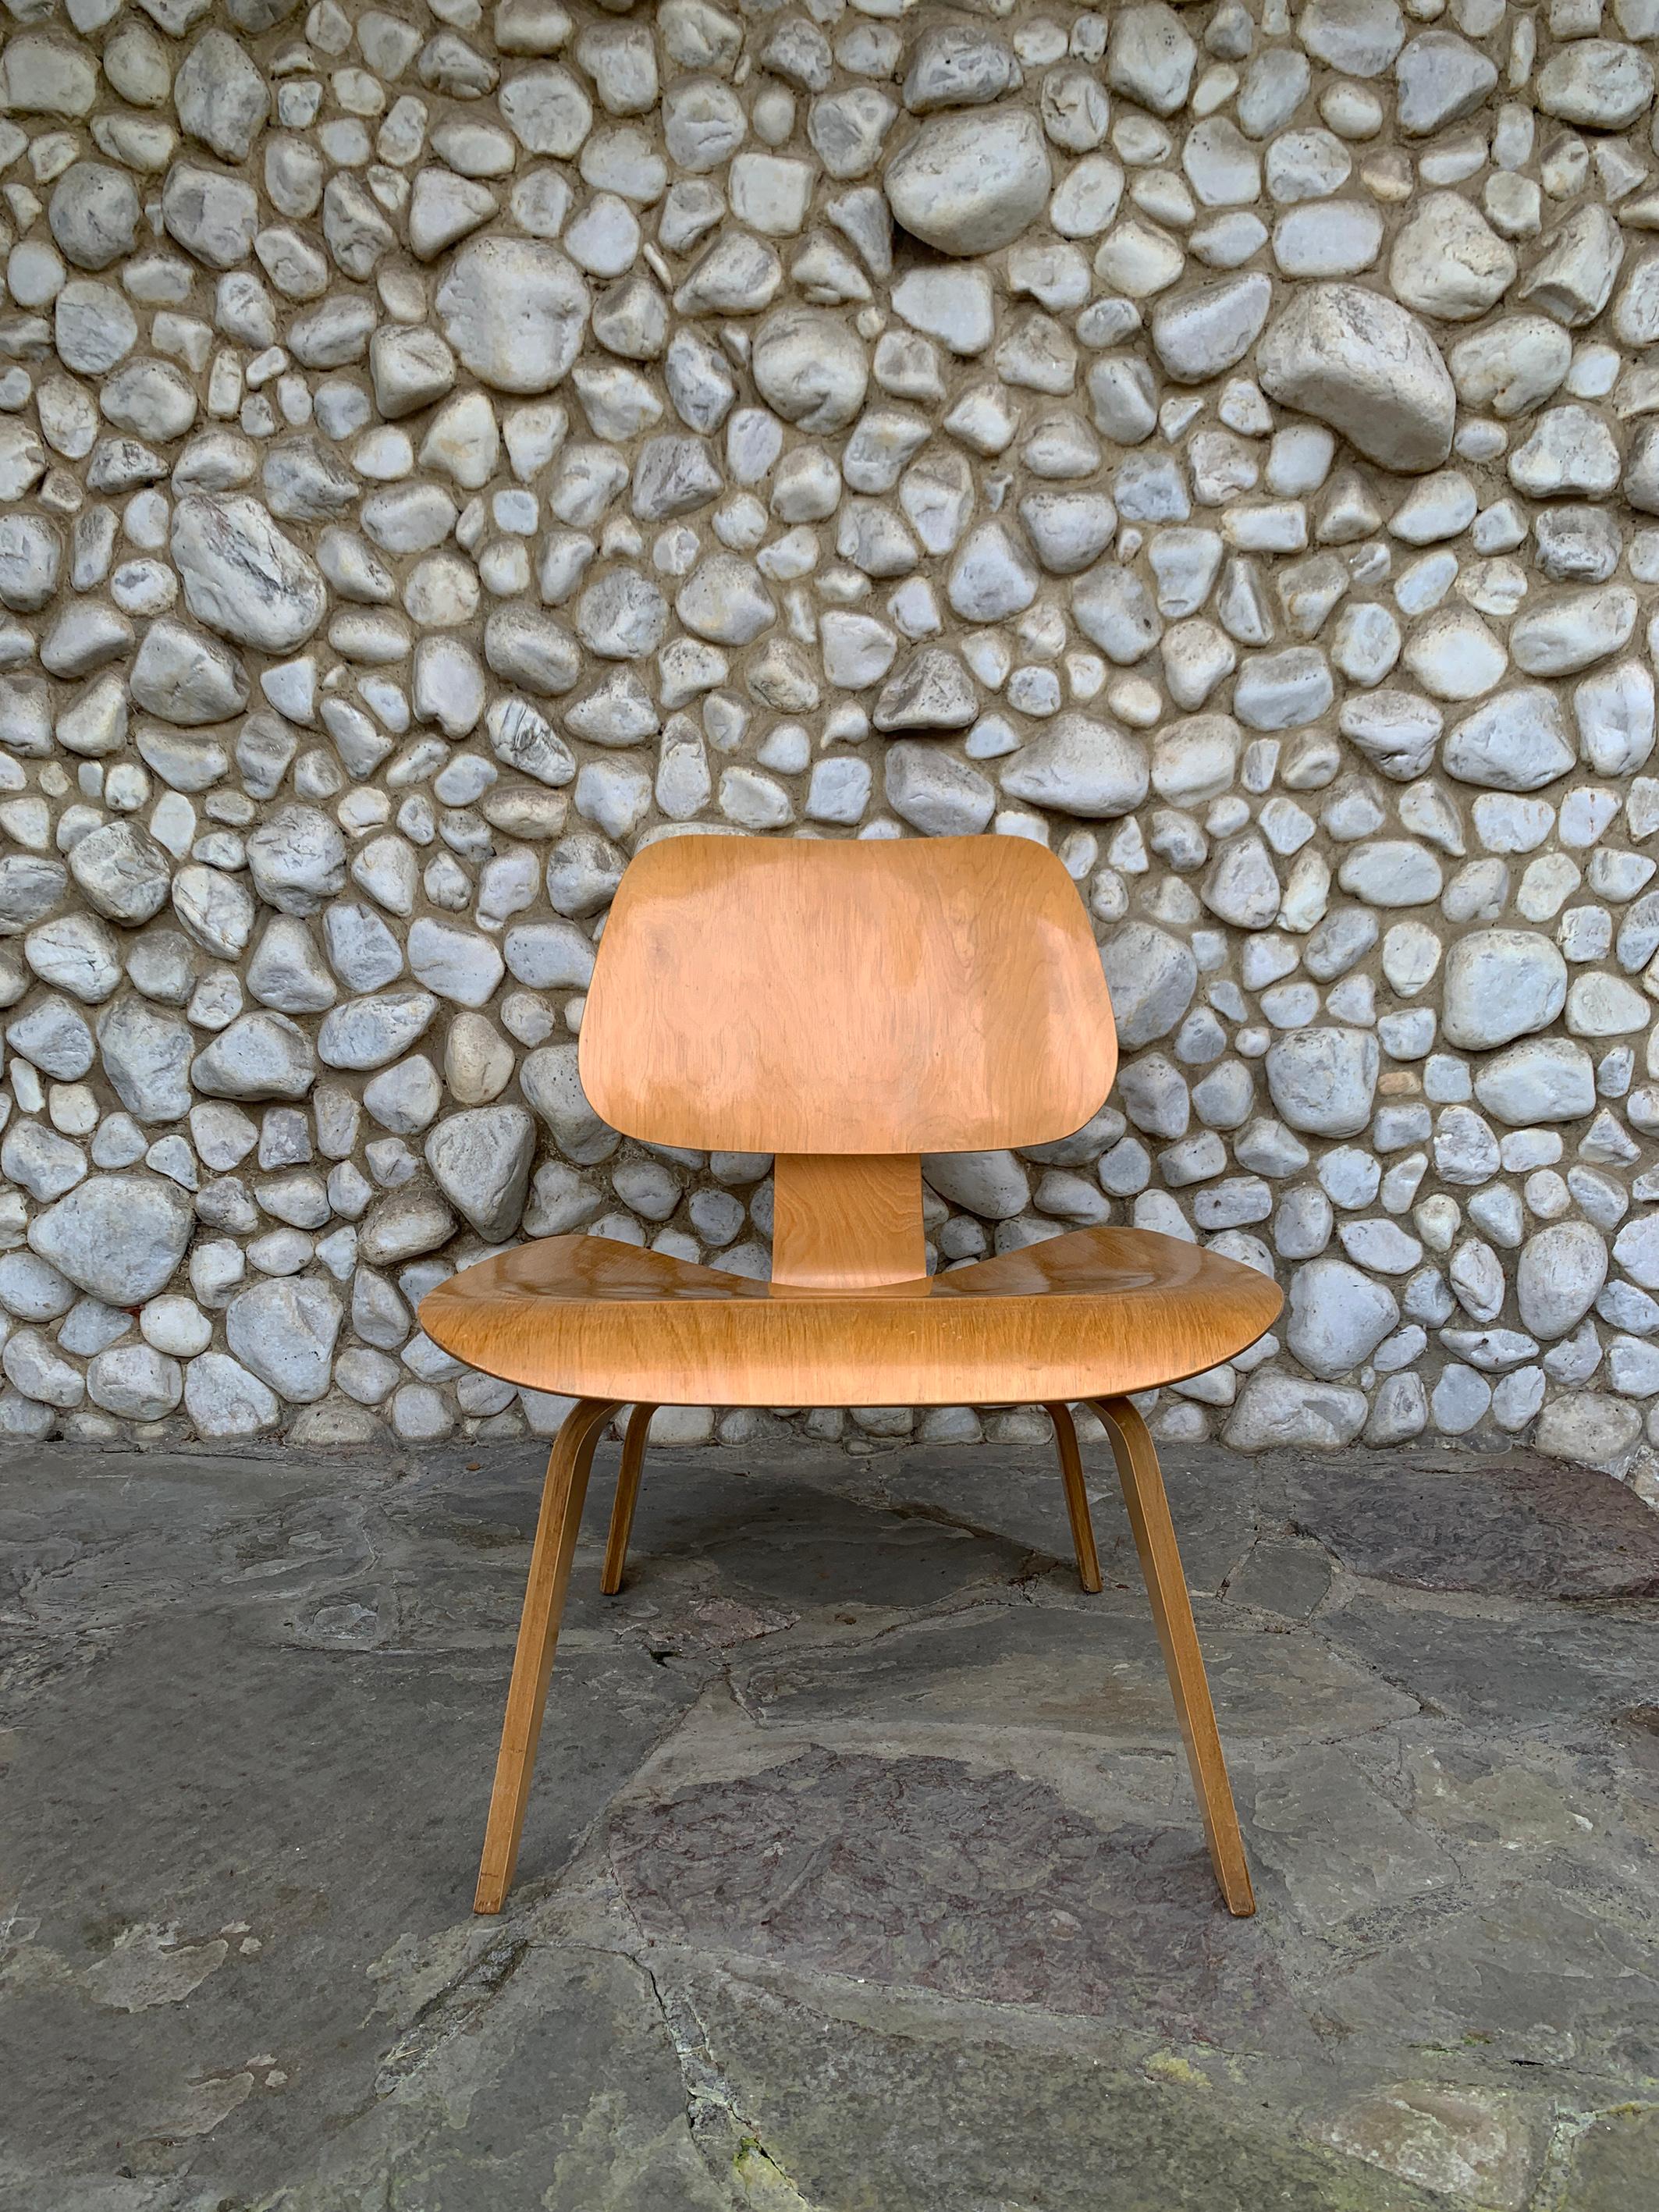 Ein früher LCW (Lounge Chair Wood) aus Birke.

Hergestellt von Herman Miller zwischen 1952 und 1958 (die Produktion des LCW wurde 1958 eingestellt, bis er 1994 wieder eingeführt wurde).   

Originalzustand und -ausführung. Heutzutage wird es immer